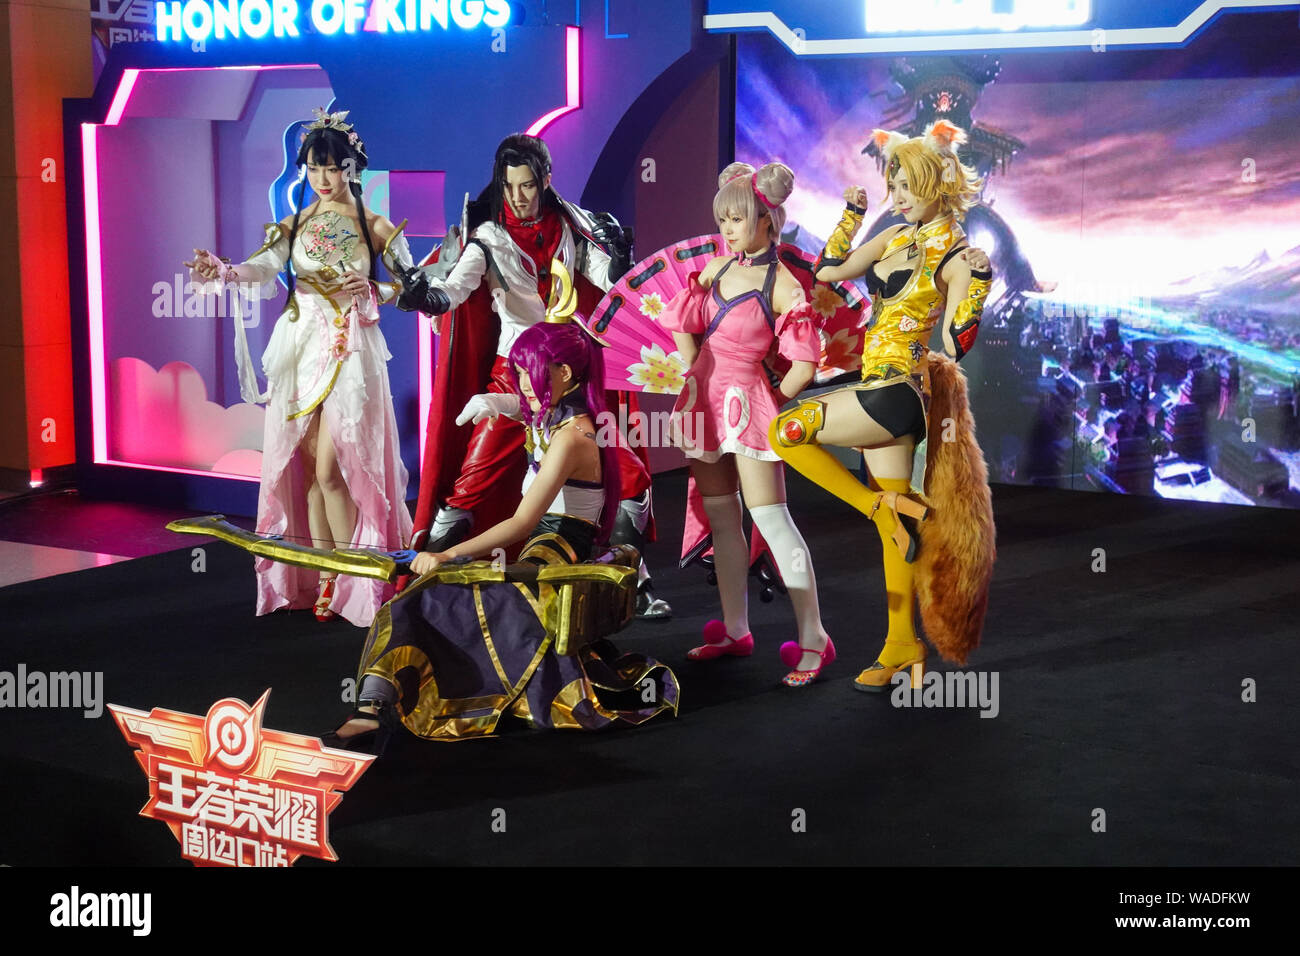 Animadores vestidos de cosplay disfraces con los personajes de Tencent MOBA móvil del "Rey de la gloria" o "Honor de Reyes' plantean en un pop-up de exposición Foto de stock